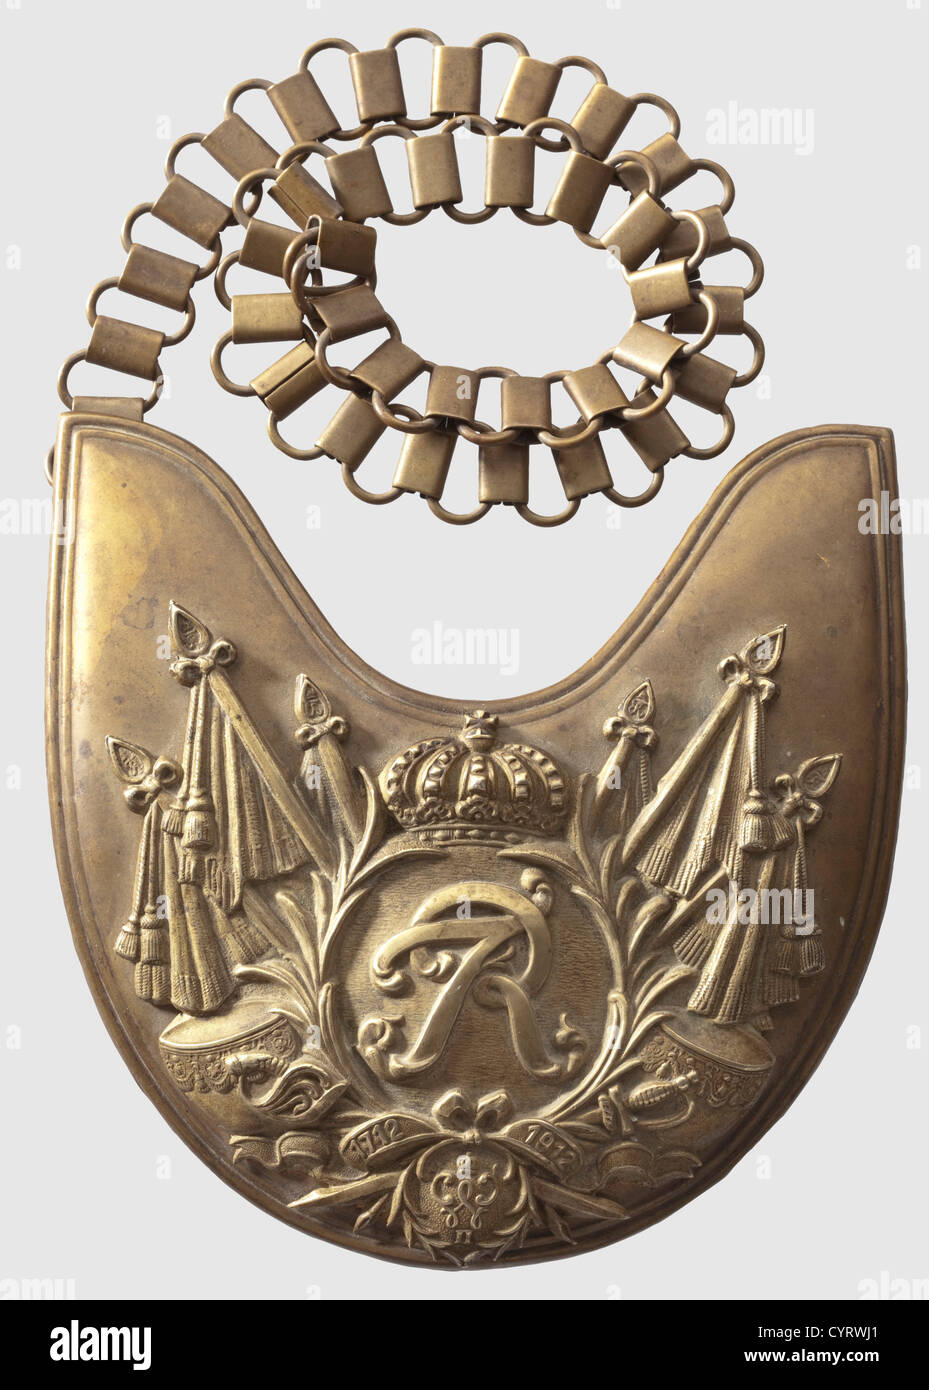 Ein Gorget M 1912 für Männer, die sich für das Regiment Garde du Corps eingeschrieben haben, Messingschild mit weißen Kupfersignien: goldene "FR"-Chiffre, Banner und eine Schriftrolle mit den Jahren "1712 - 1912" über der Chiffre "W II". Es gibt vier Befestigungsmuttern auf der Rückseite, die beschriftet ist, 'G.d.C.L.U.L.U., 56' und trägt die Marke des Herstellers,'C.E. Juncker Berlin.“ Komplett mit einer 50 cm langen Tombac-Aufhängekette. Seltener Gorget mit schöner Patina. Es stammt aus dem gleichen Erbe wie der Helm M 1867 und cuirass, historisch, historisch, 19. Jahrhundert, 18. Jahrhundert, Preußen, Preußen, Deutsch, Ge, zusätzliche-Rechte-Clearences-nicht verfügbar Stockfoto